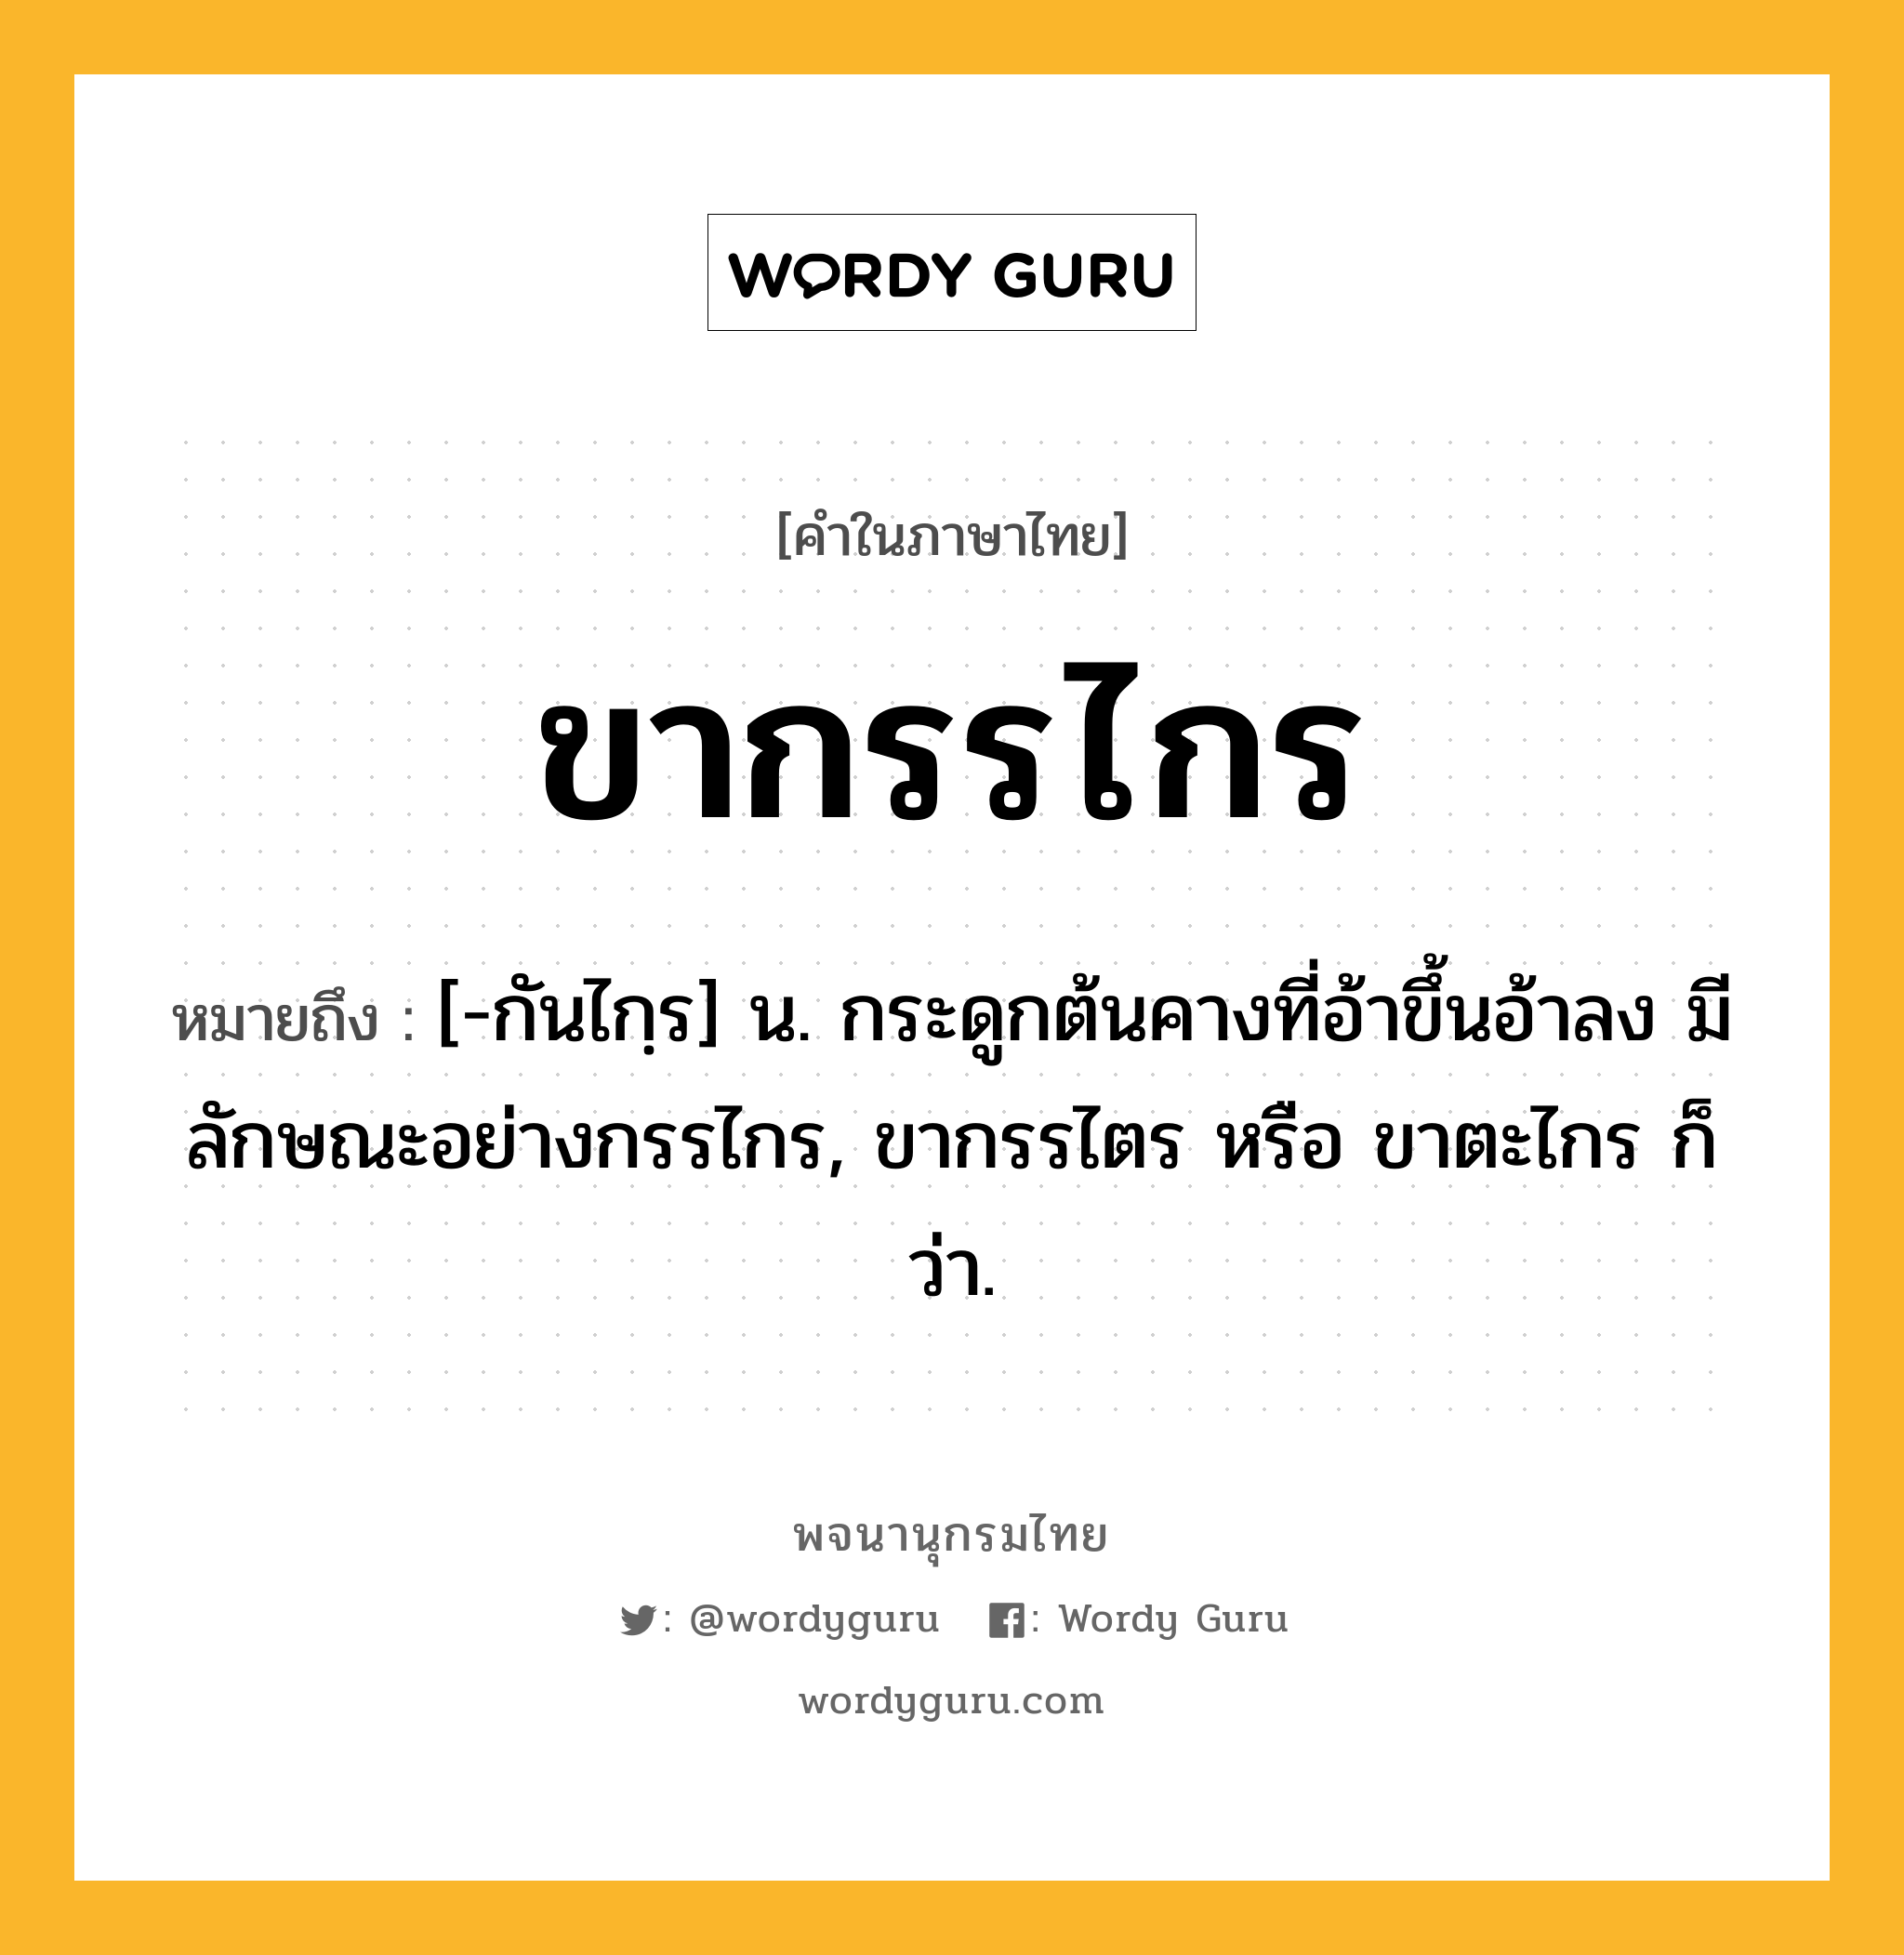 ขากรรไกร หมายถึงอะไร?, คำในภาษาไทย ขากรรไกร หมายถึง [-กันไกฺร] น. กระดูกต้นคางที่อ้าขึ้นอ้าลง มีลักษณะอย่างกรรไกร, ขากรรไตร หรือ ขาตะไกร ก็ว่า.